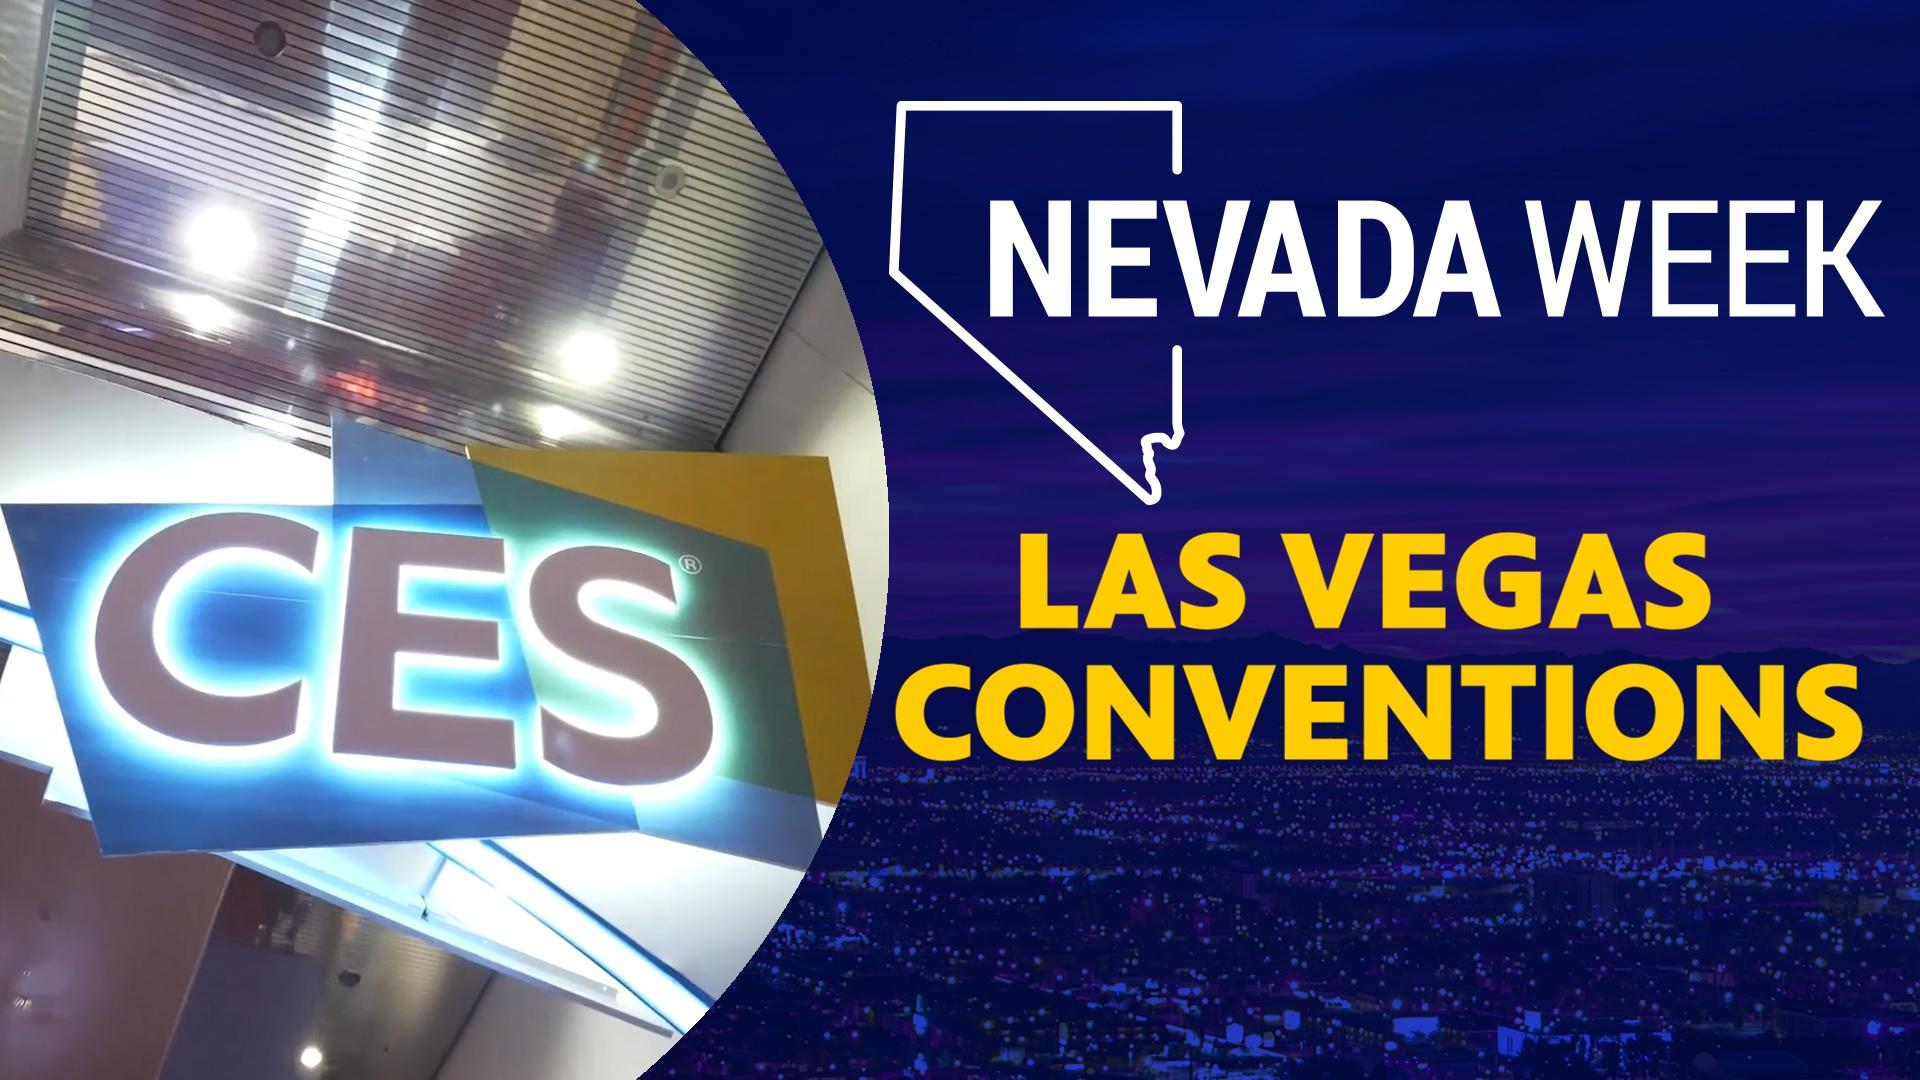 Las Vegas Conventions Nevada Week